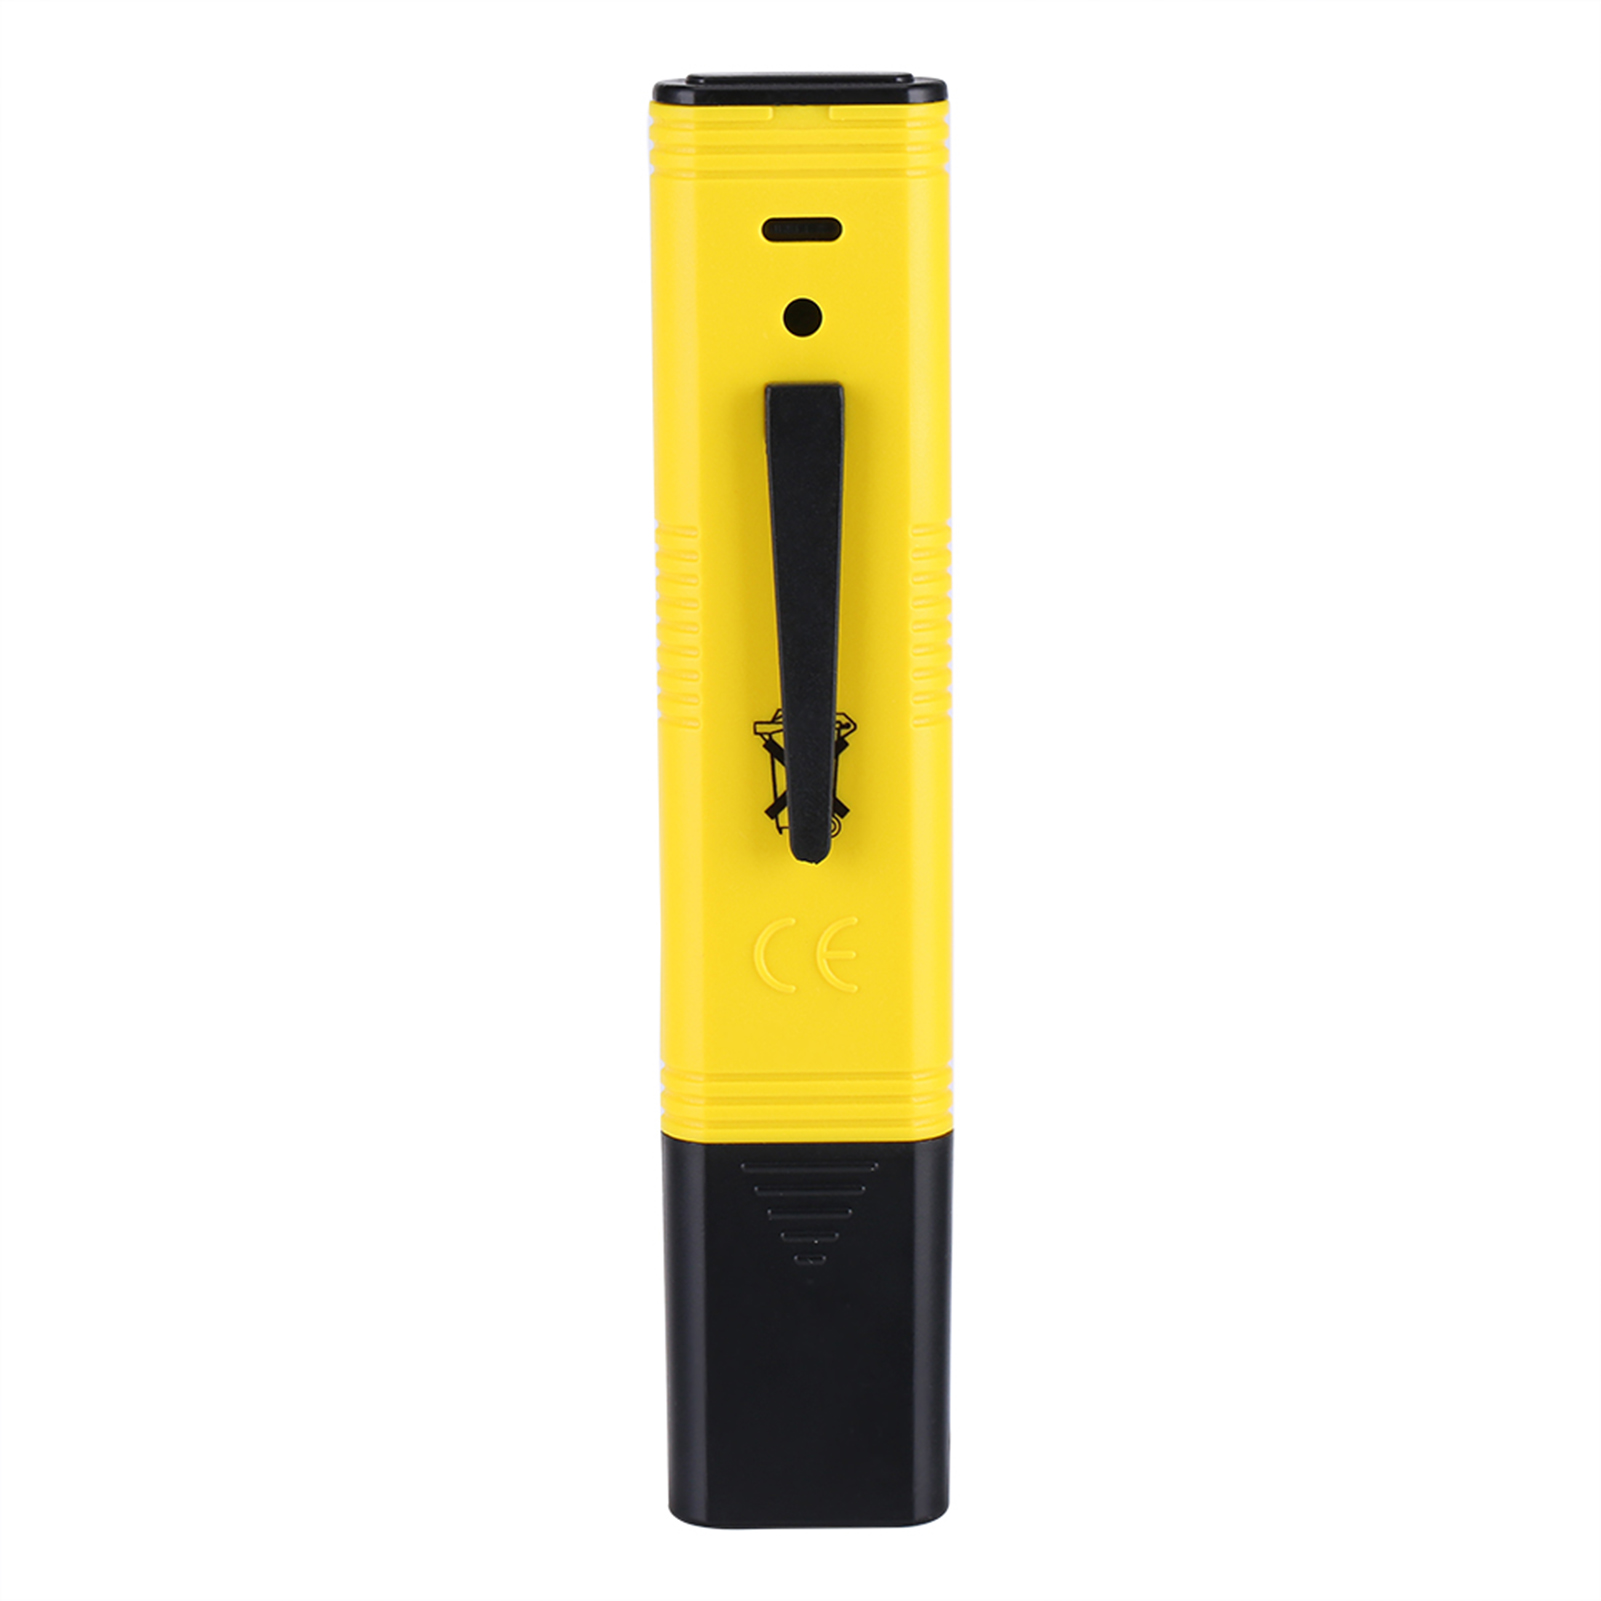 Protable LCD Digital PH Meter Pen Aquarium Pool Water Wine Tester Tool , LCD PH Tester, PH Meter Pen